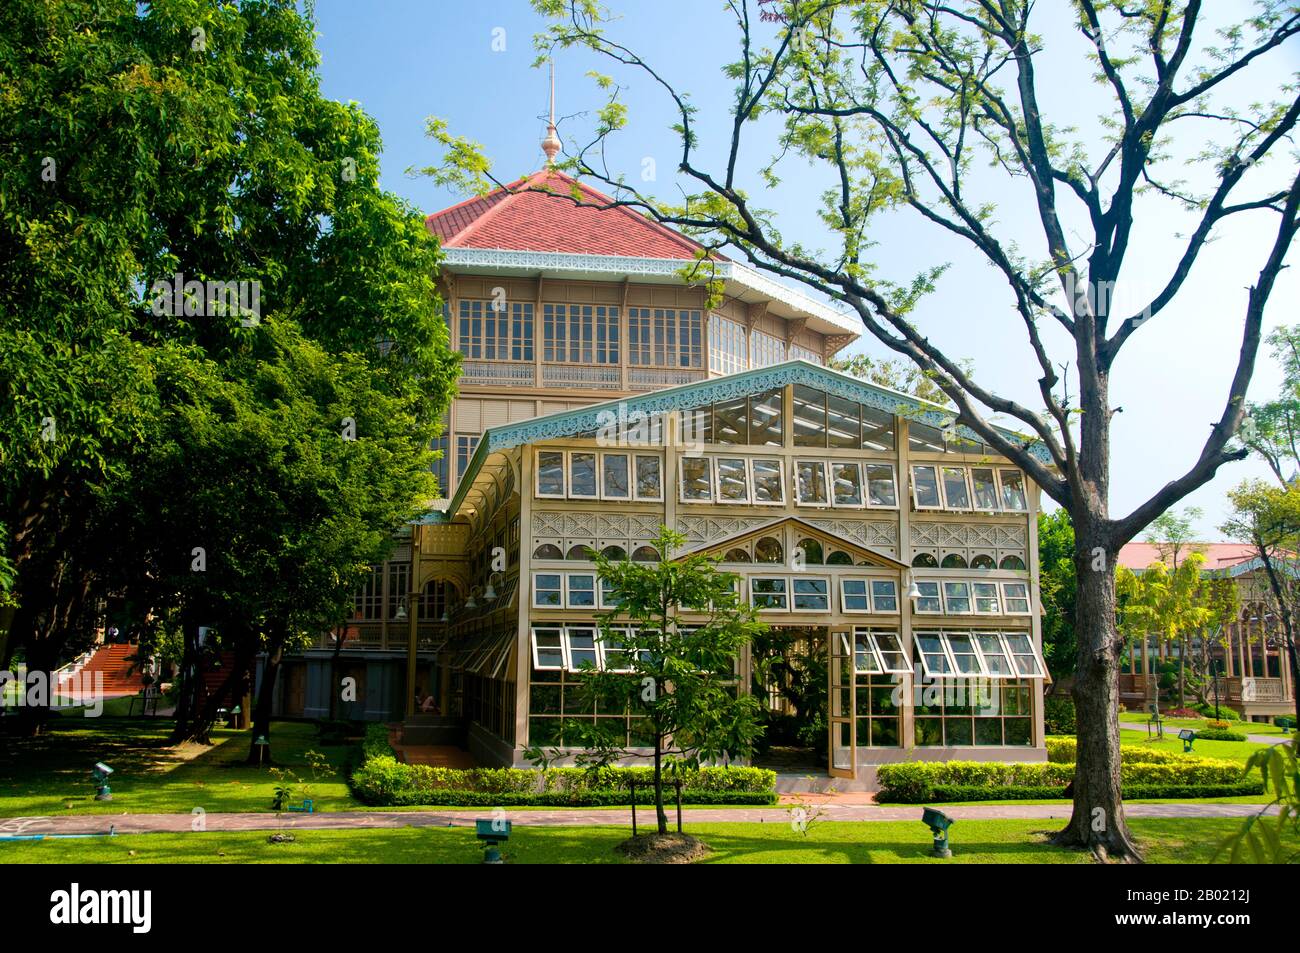 Le Vimanmek Mansion est un ancien palais royal et est également connu sous le nom de Vimanmek Teak Mansion ou Vimanmek Palace. Vimanmek Mansion a été construit en 1900 par le roi Rama V (roi Chulalongkorn) en ayant la résidence Munthatu Rattanaroj à Chuthathhuj Rachatha à Ko Sichang, Chonburi, démonté et remonté à Dusit Garden. Il a été achevé le 27 mars 1901 et utilisé comme palais royal par le roi Rama V pendant cinq ans. En 1982, la reine Sirikit a demandé la permission du roi Rama IX (Bhumibol Adulyadej) de rénover le palais Vimanmek pour l'utiliser comme musée pour commémorer le roi Rama V en présentant ses photos, pe Banque D'Images